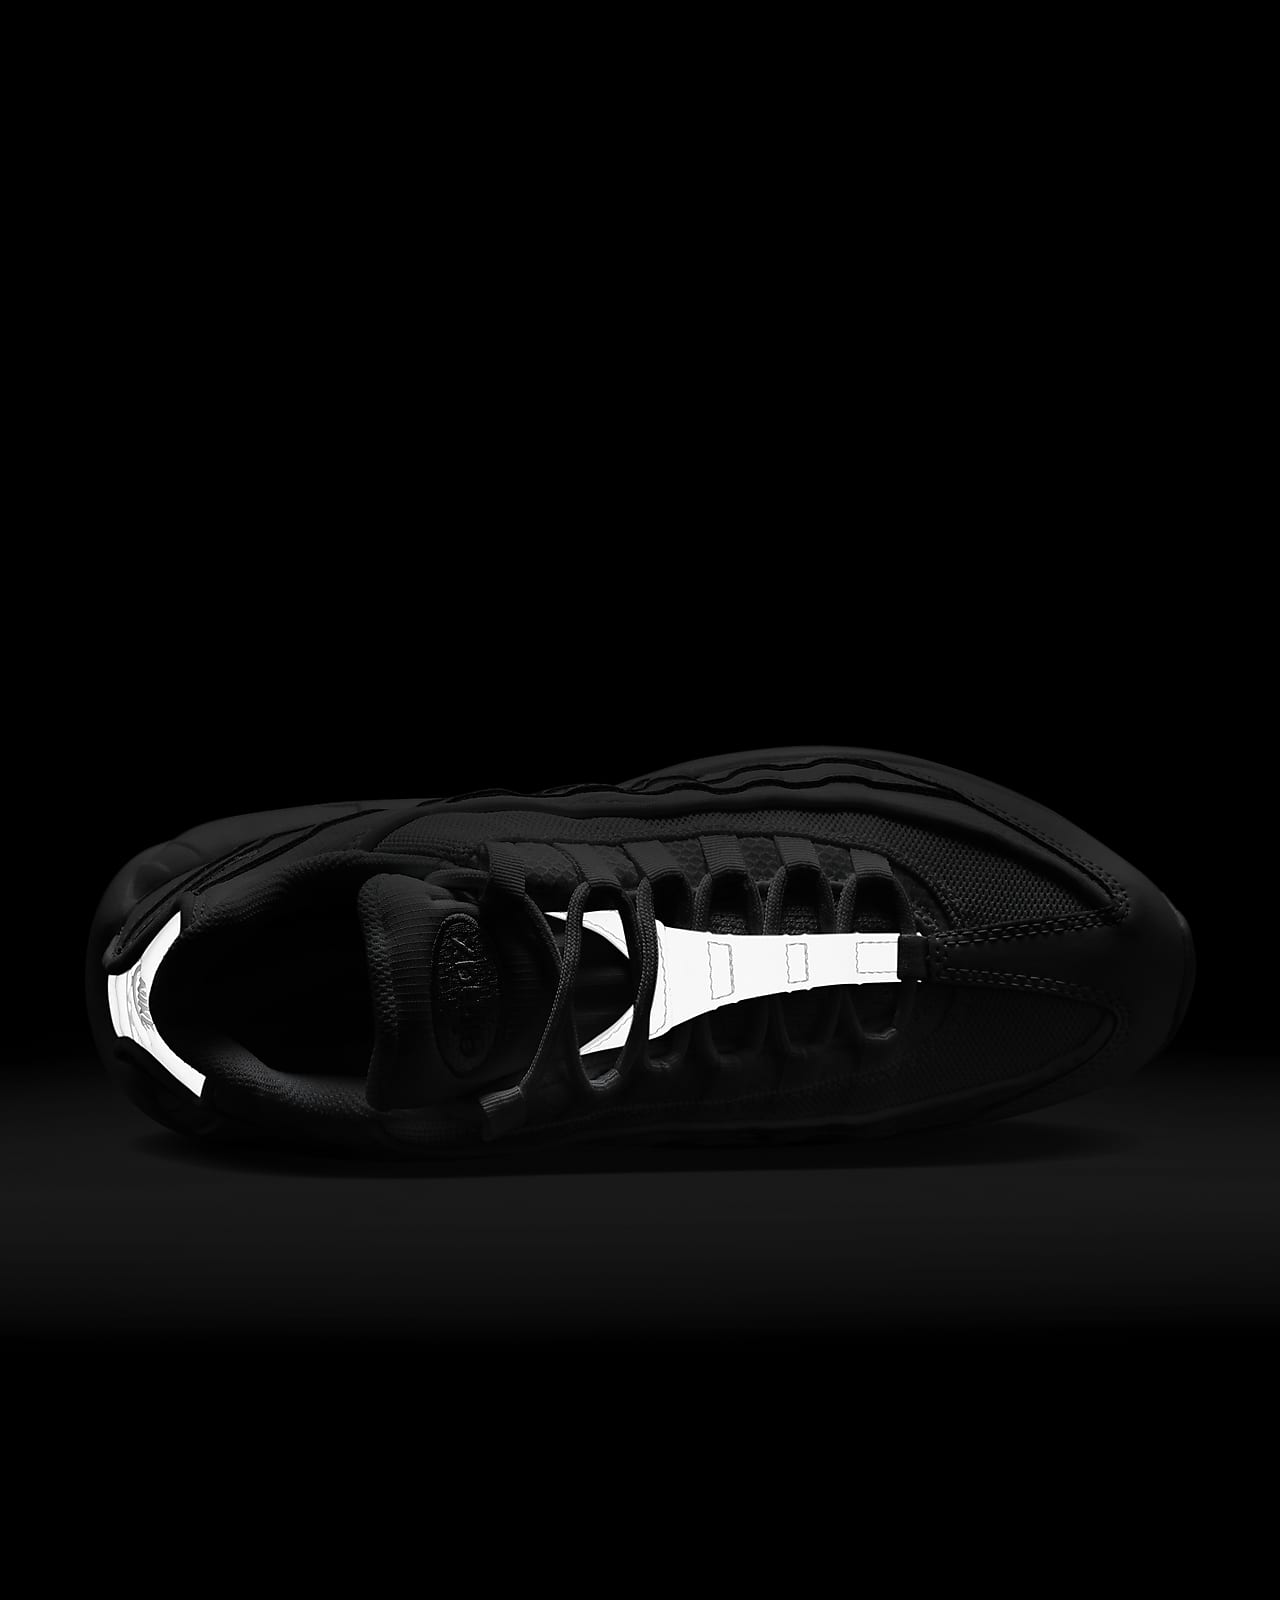 Nike Air Max 95 Essential Noir 'Triple Black' 2016